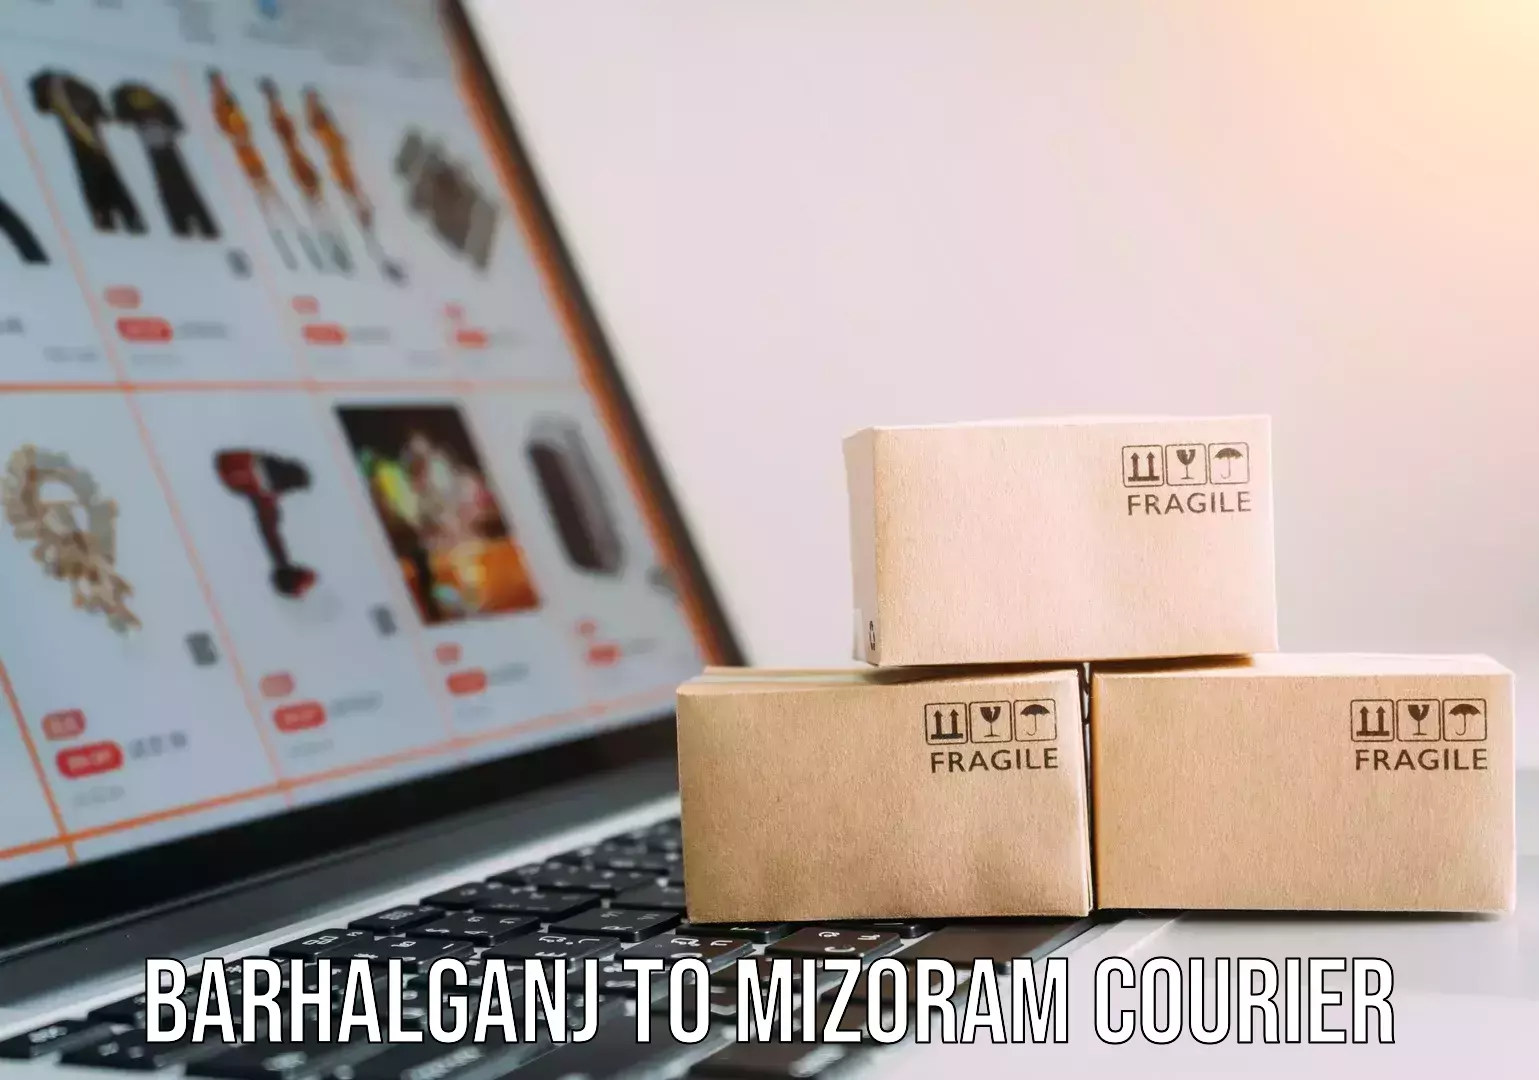 Efficient cargo services Barhalganj to Mizoram